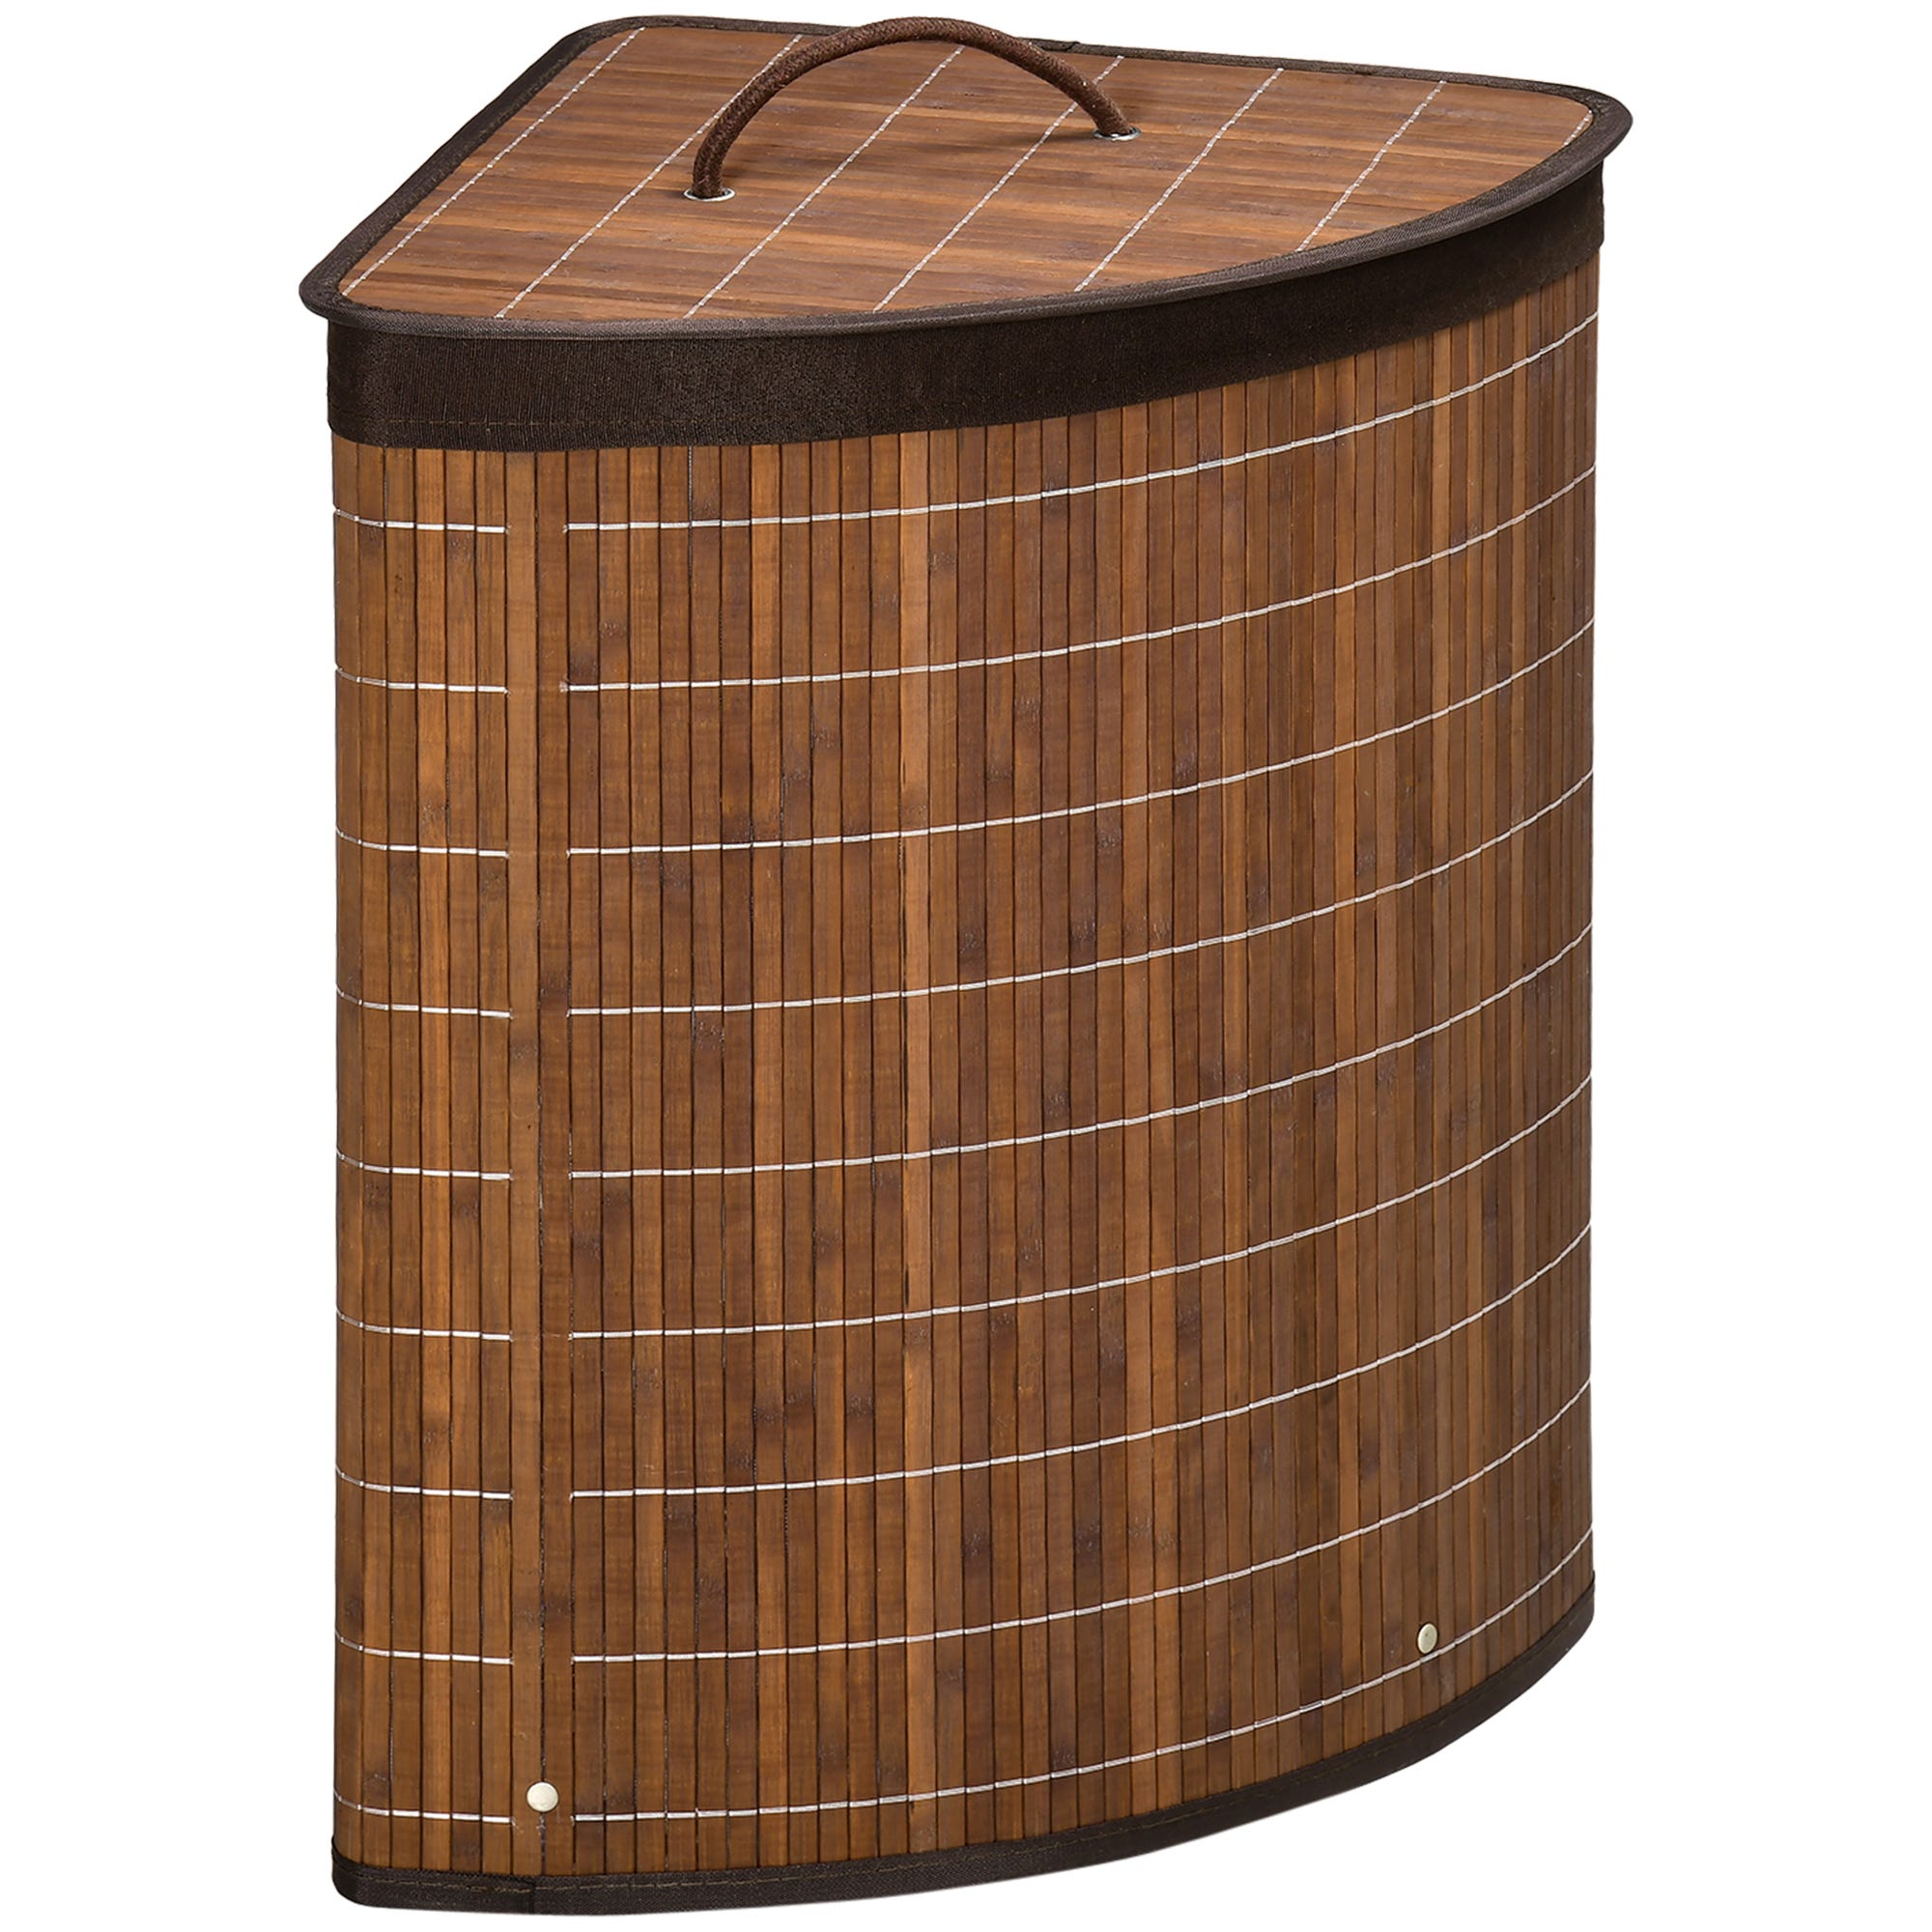 Cesto de ropa de bambú con 3 compartimentos - l60 x a61.5 cm marrón